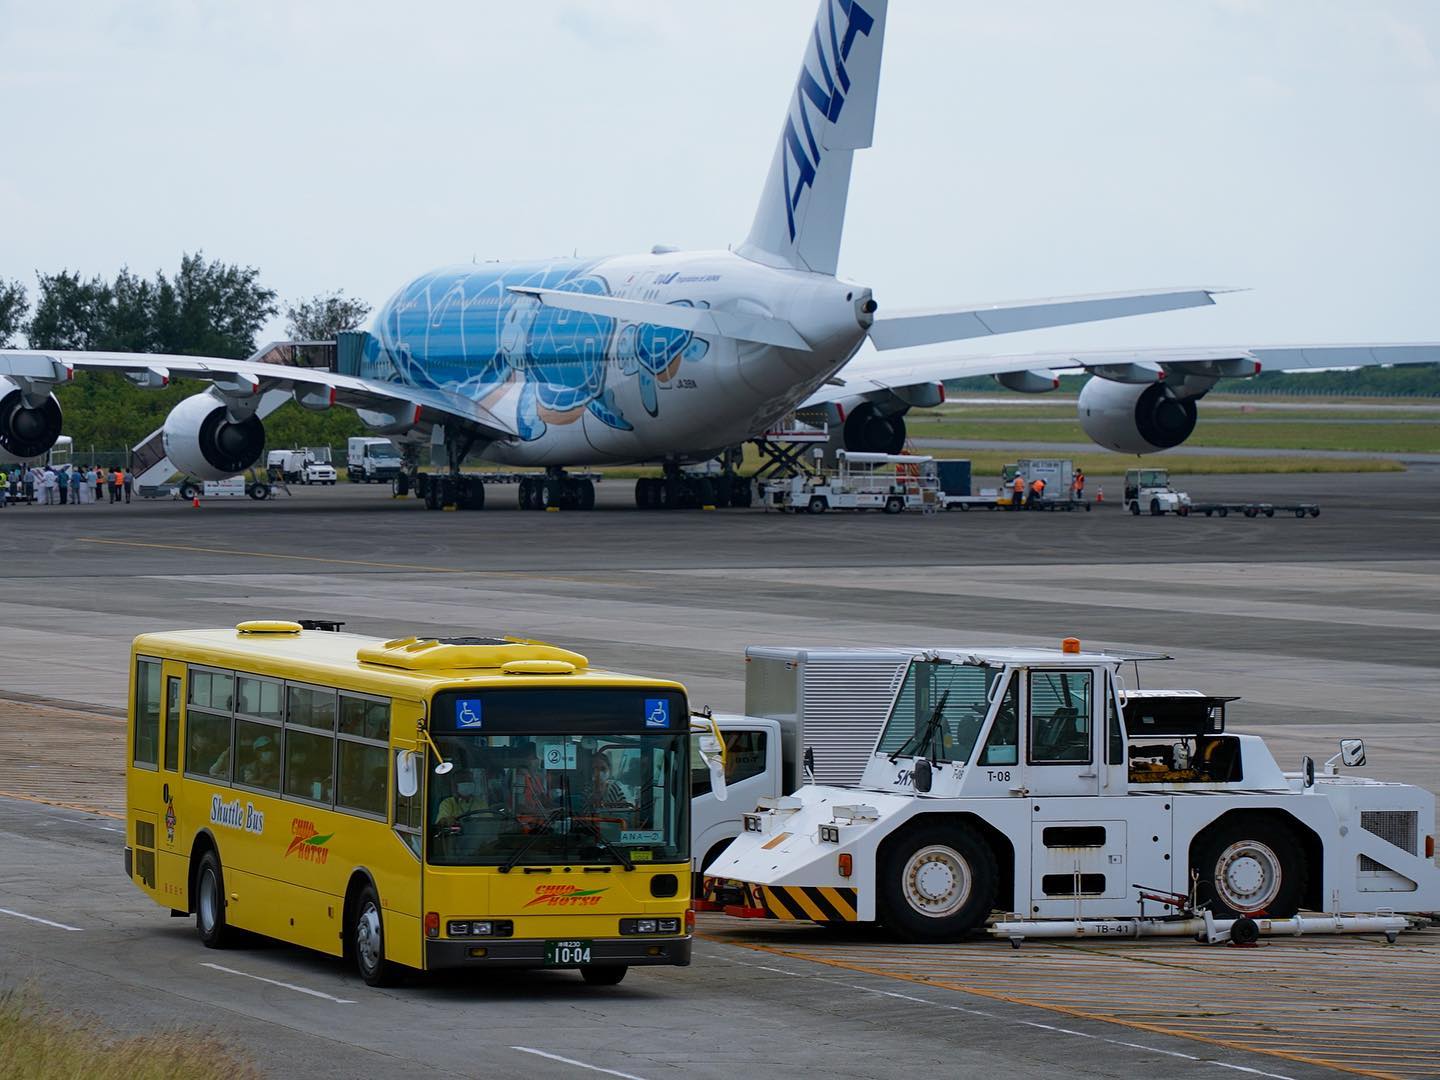 下地島空港🛬
弊社ではA380フライングホヌの駐機場⇄ターミナル間のランプバスを運行させて頂きました🚌
弊社としても空港内の運行は初‼️
ご依頼頂けたことに感謝申し上げます🙇‍♂️

#宮古島 #下地島 #下地島空港 #ANA #A380 #フライングホヌ #ランプバス #沖縄 #宮古島旅行